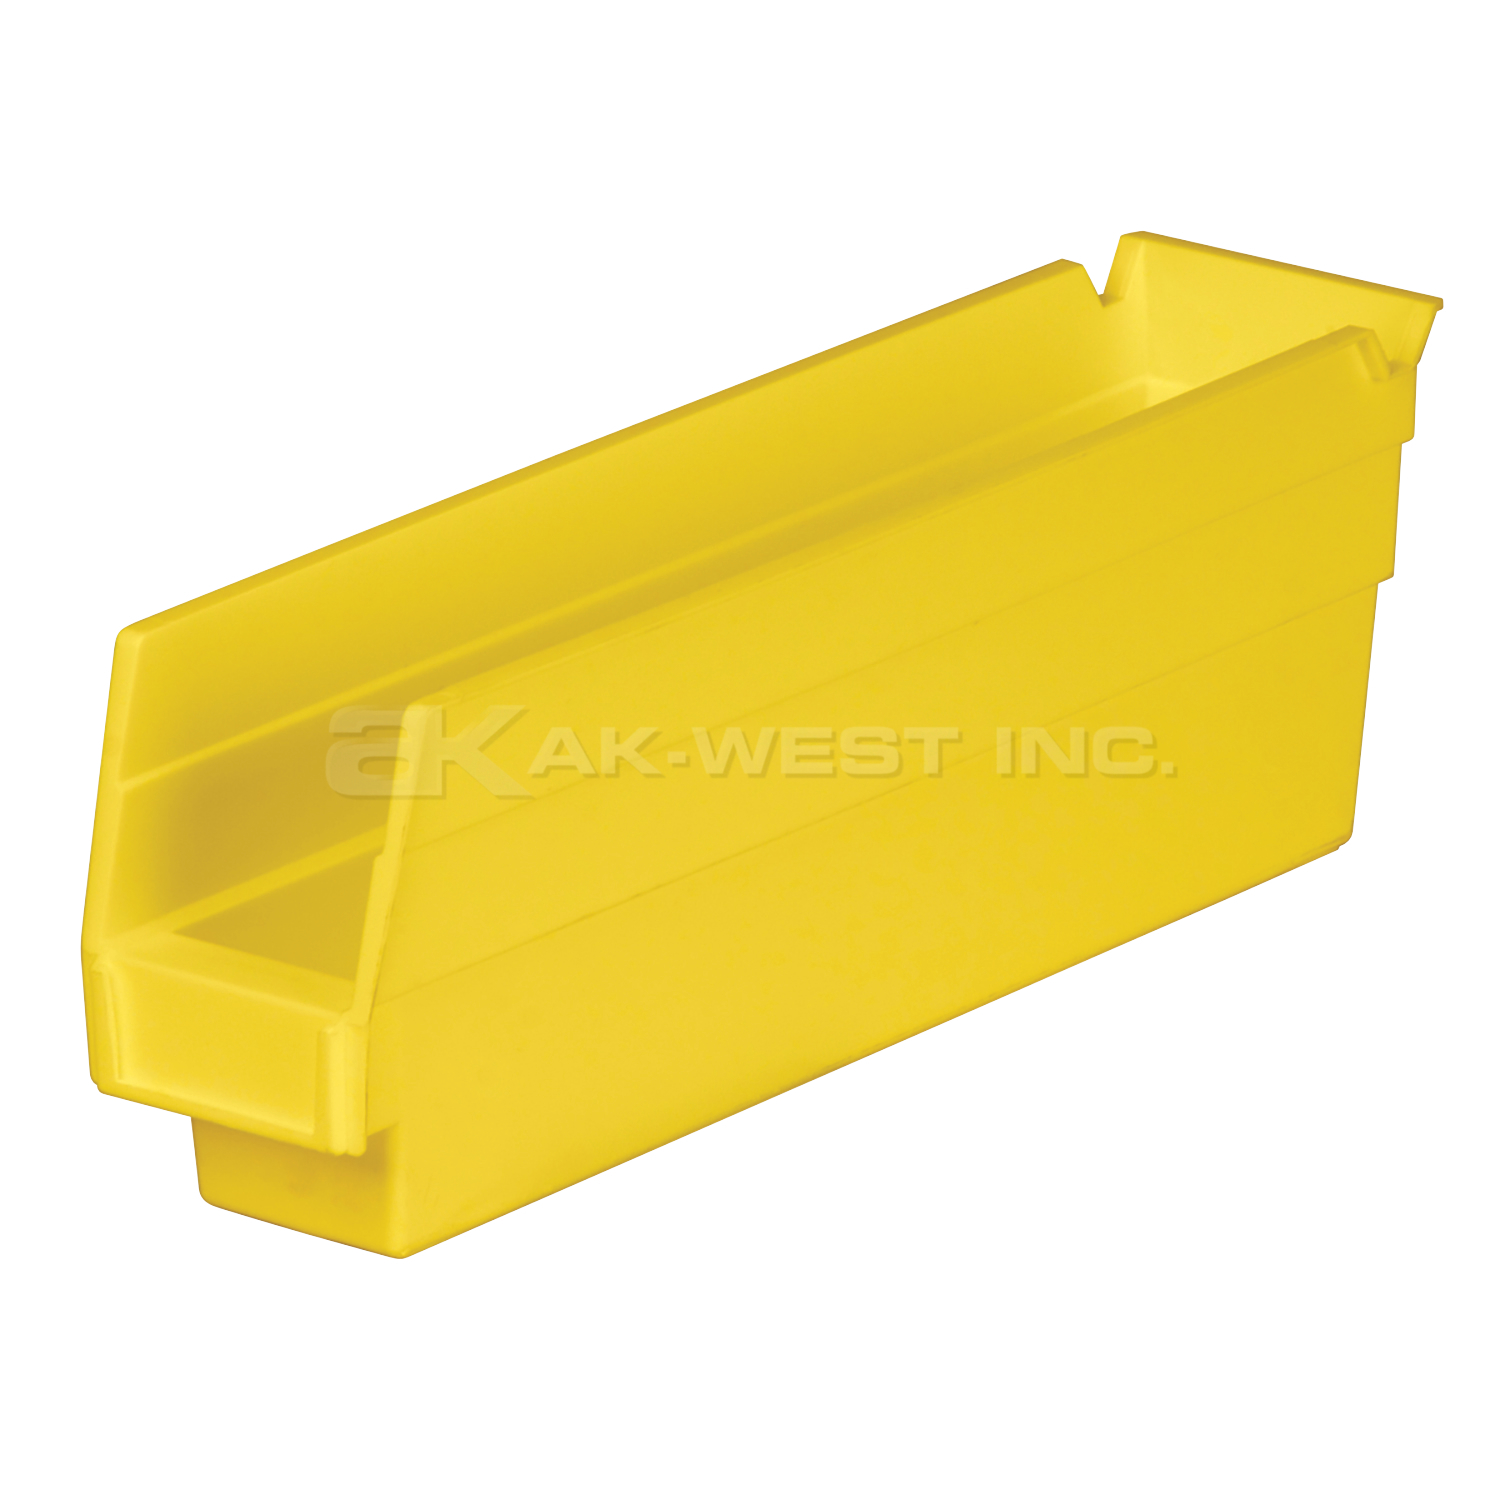 Yellow, 11-5/8" x 2-3/4" x 4" Shelf Bin (24 Per Carton)